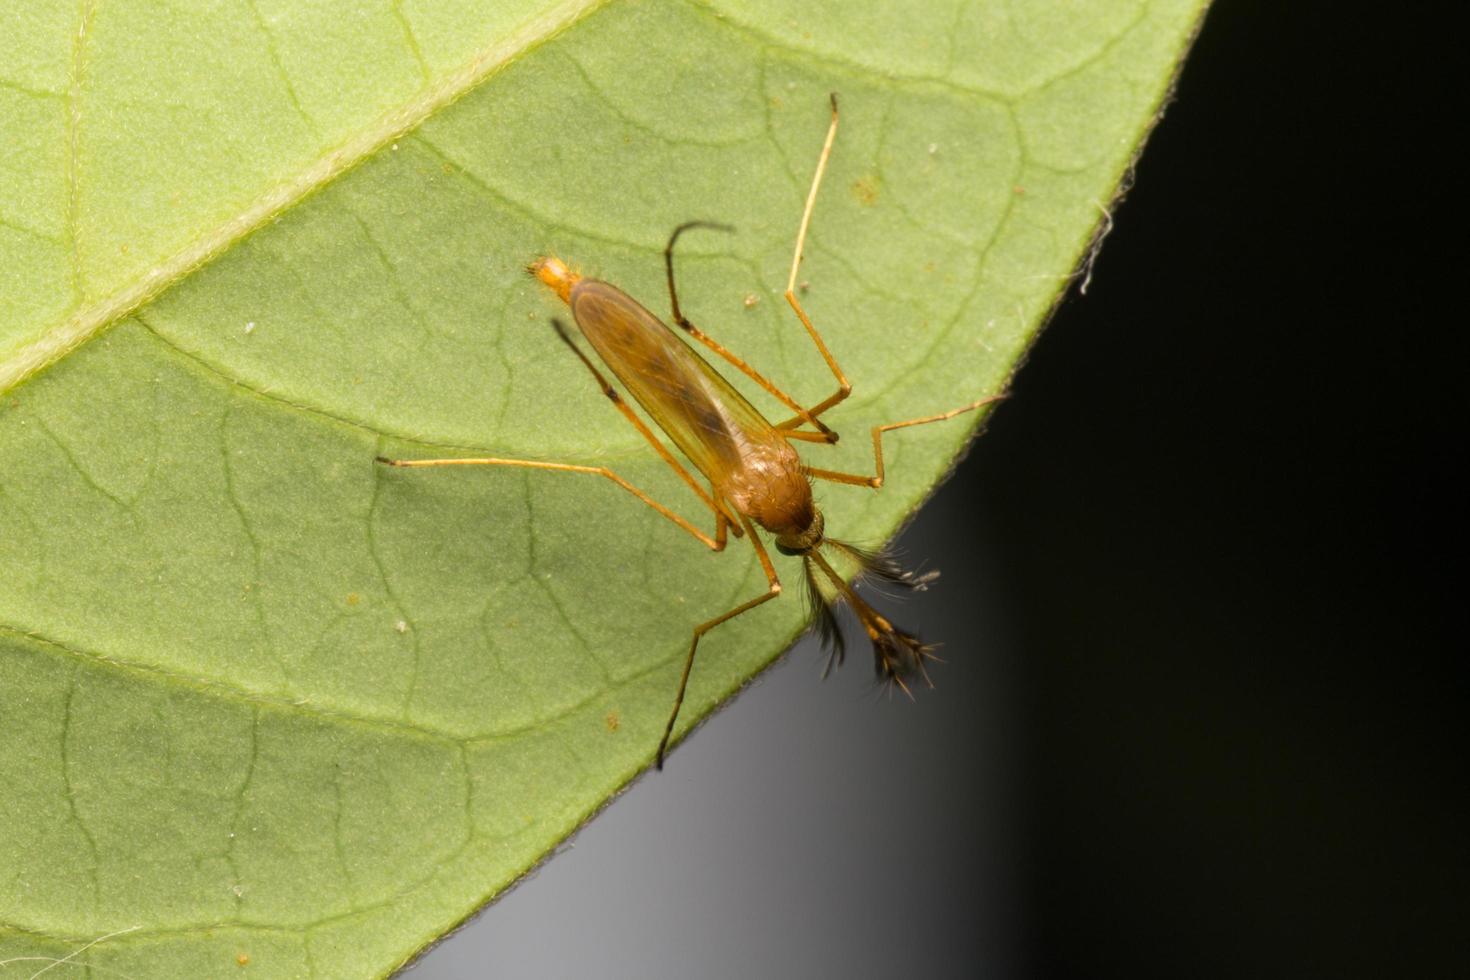 klein insect op een blad foto